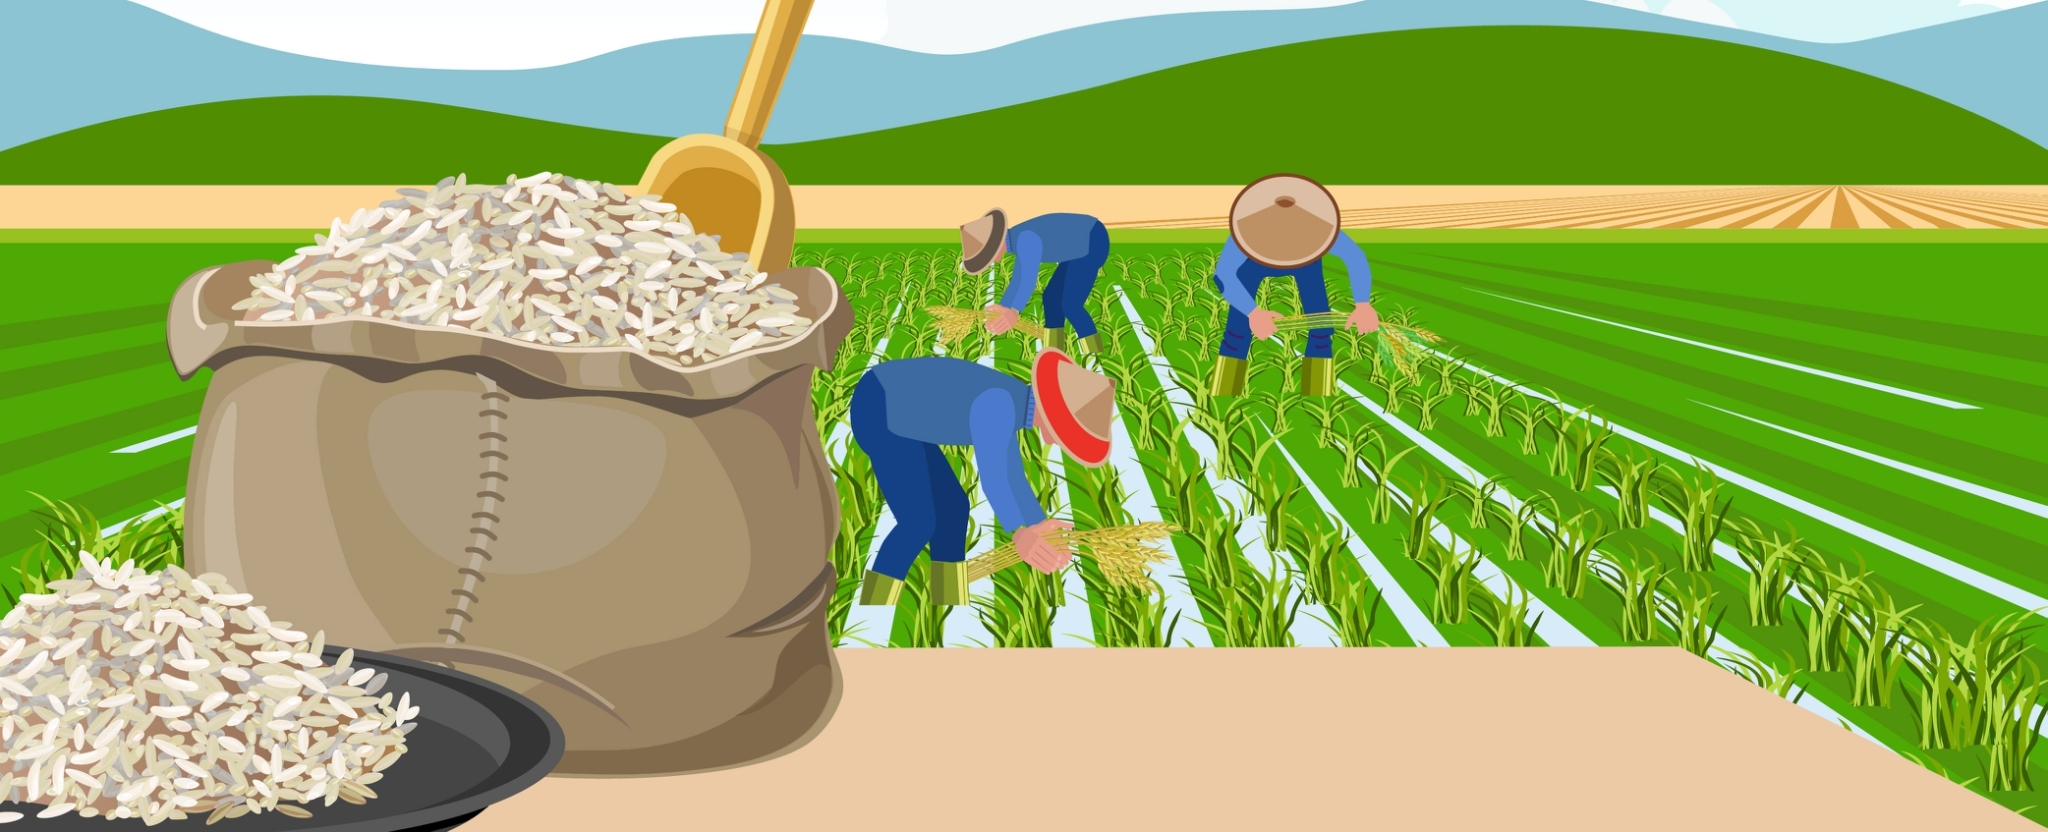 นโยบายปรับโครงสร้างทางการเกษตรส่งผลให้ราคาข้าวของเวียดนามสูงขึ้น